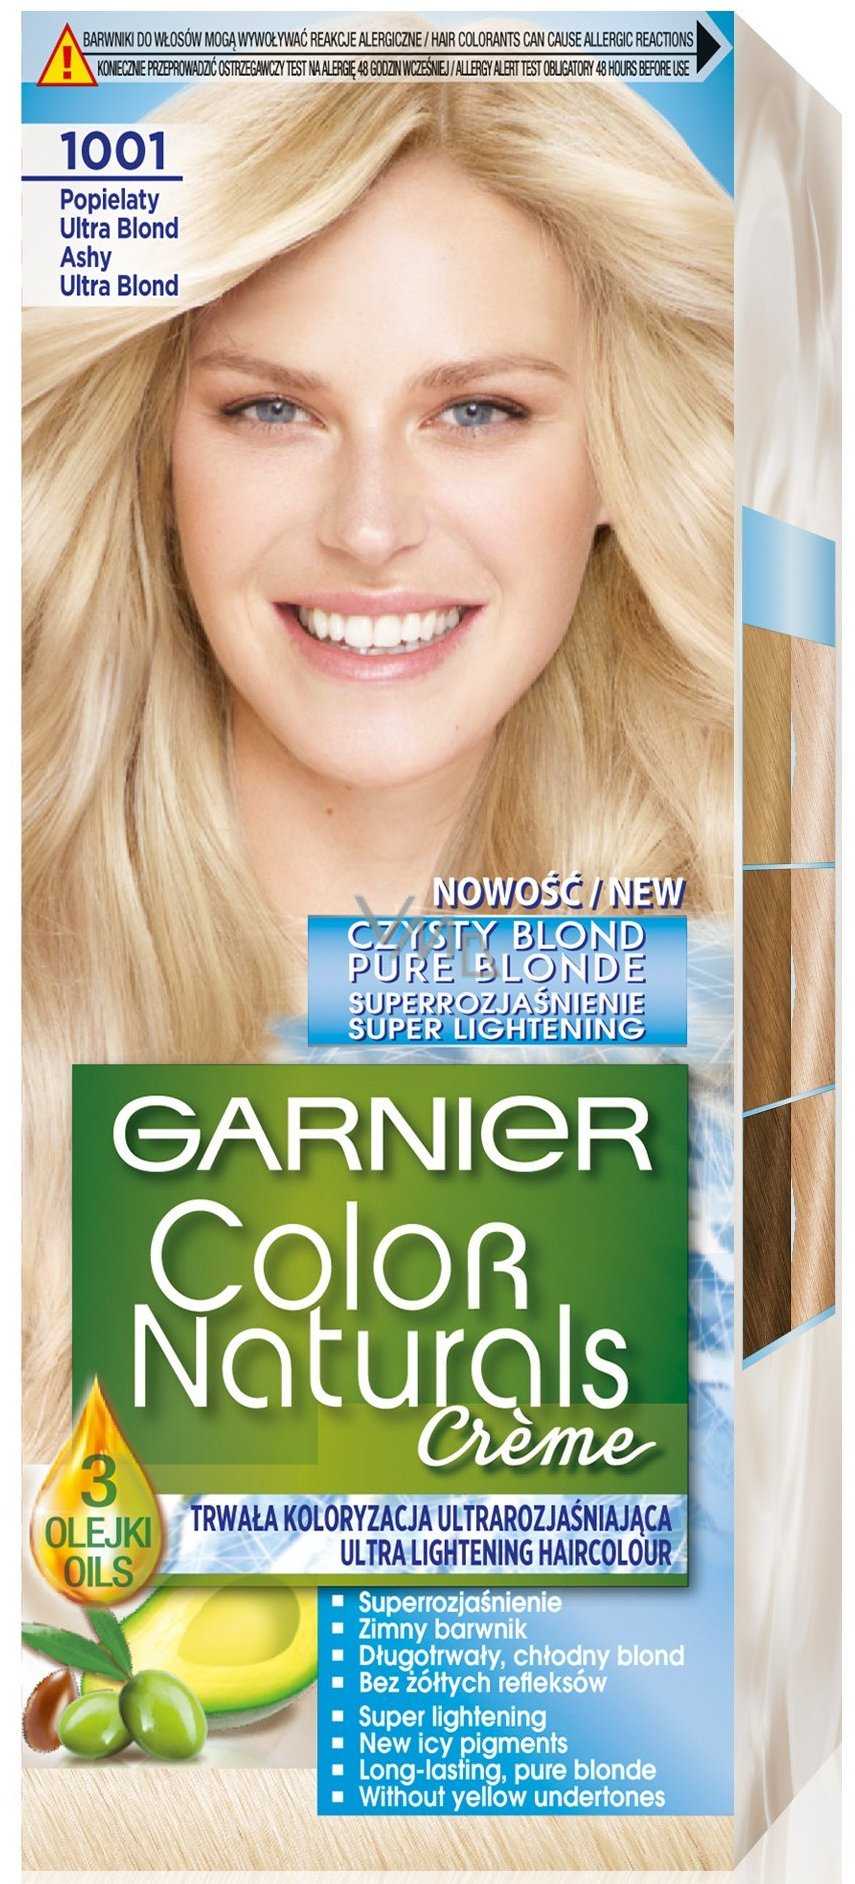 Garnier Color Naturals Créme hair color 1001 Ash ultra blonde - VMD  parfumerie - drogerie